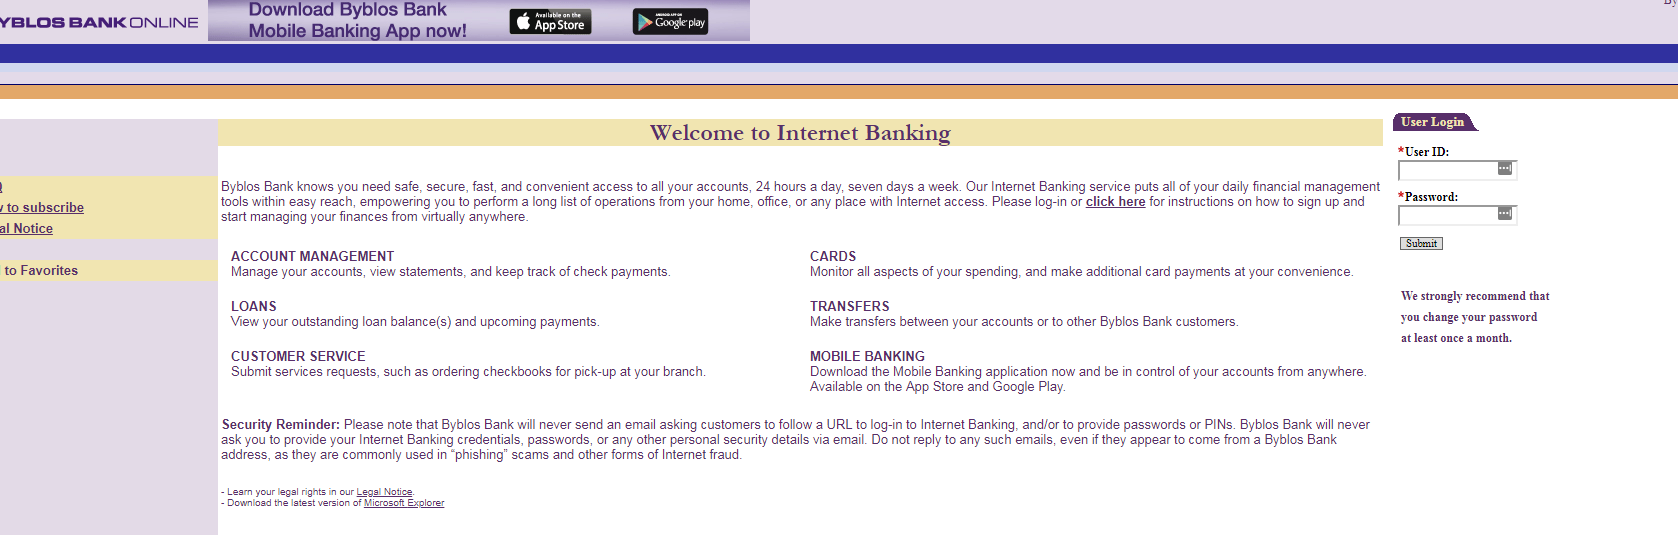 log in byblos bank beirut lebanon internet online bank